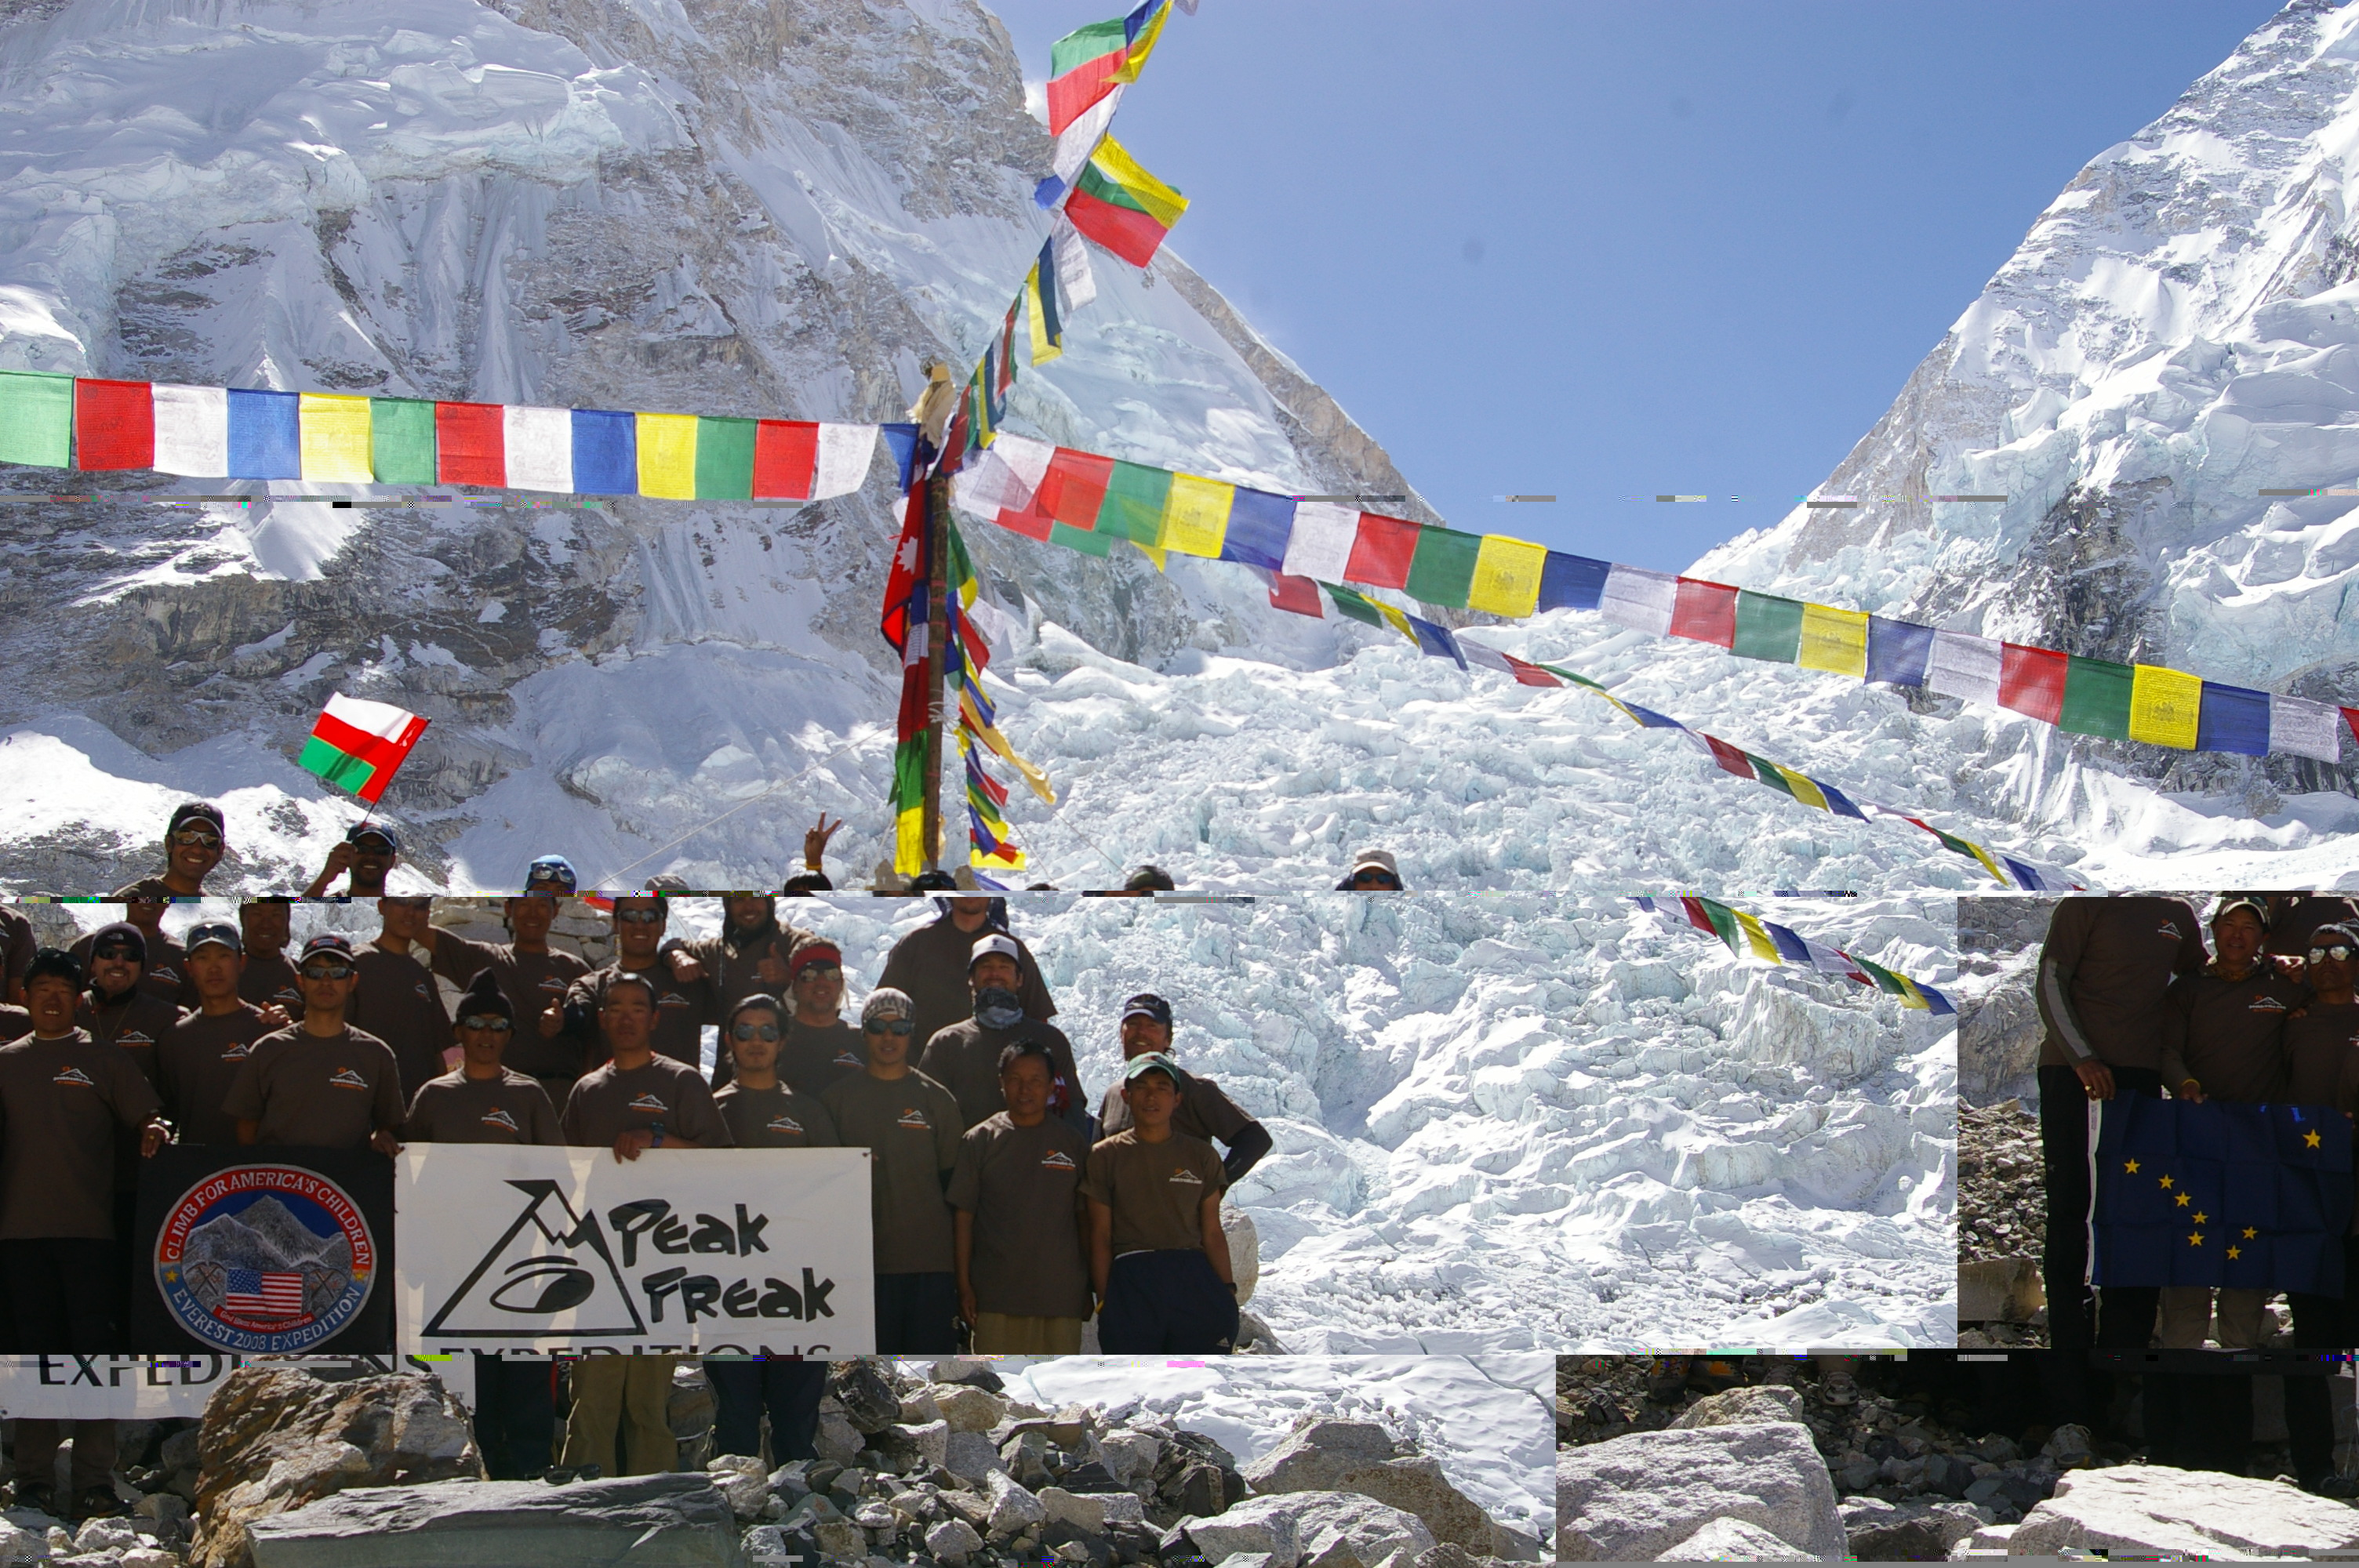 Peak Freaks Mt. Everest 2008 team 